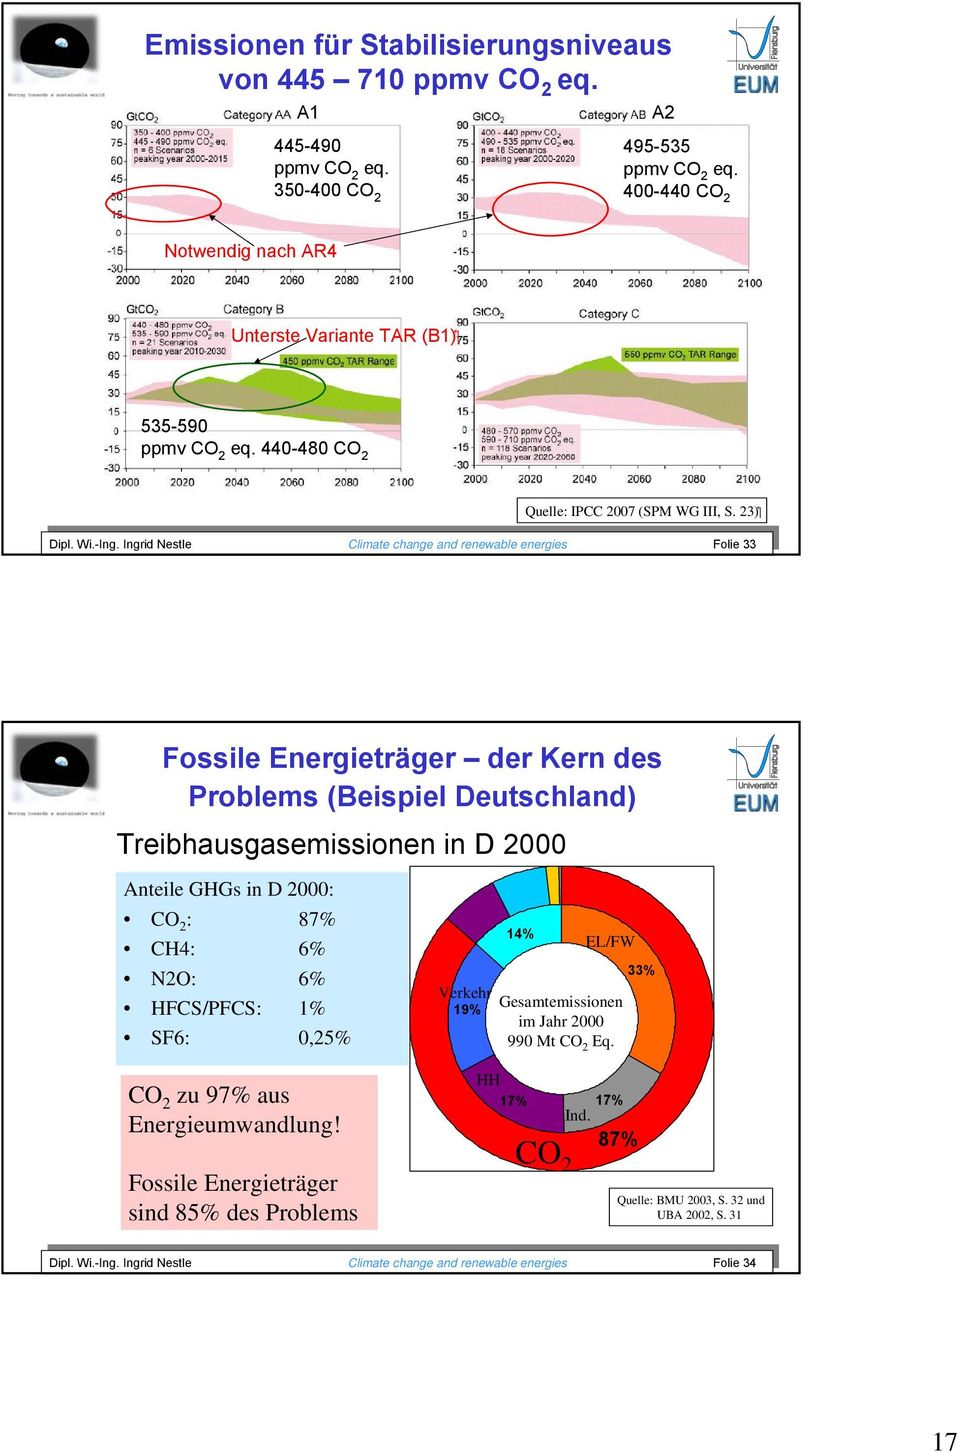 Ingrid Nestle Climate change and renewable energies Folie 33 Dipl. Wi.-Ing.